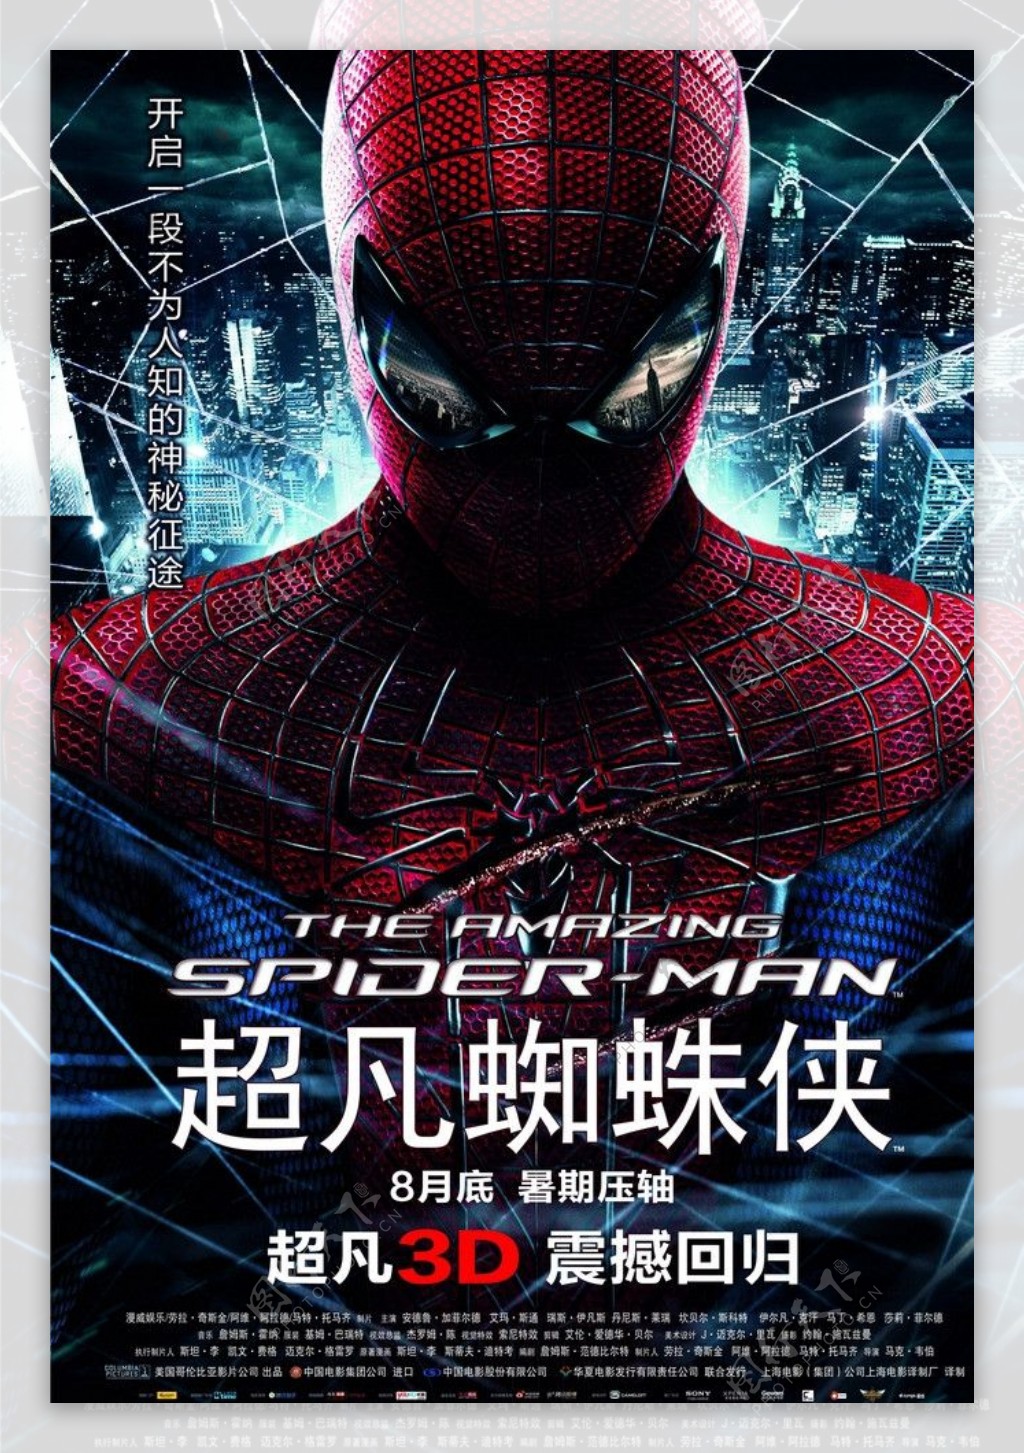 超凡蜘蛛侠3D高清海报中国版图片